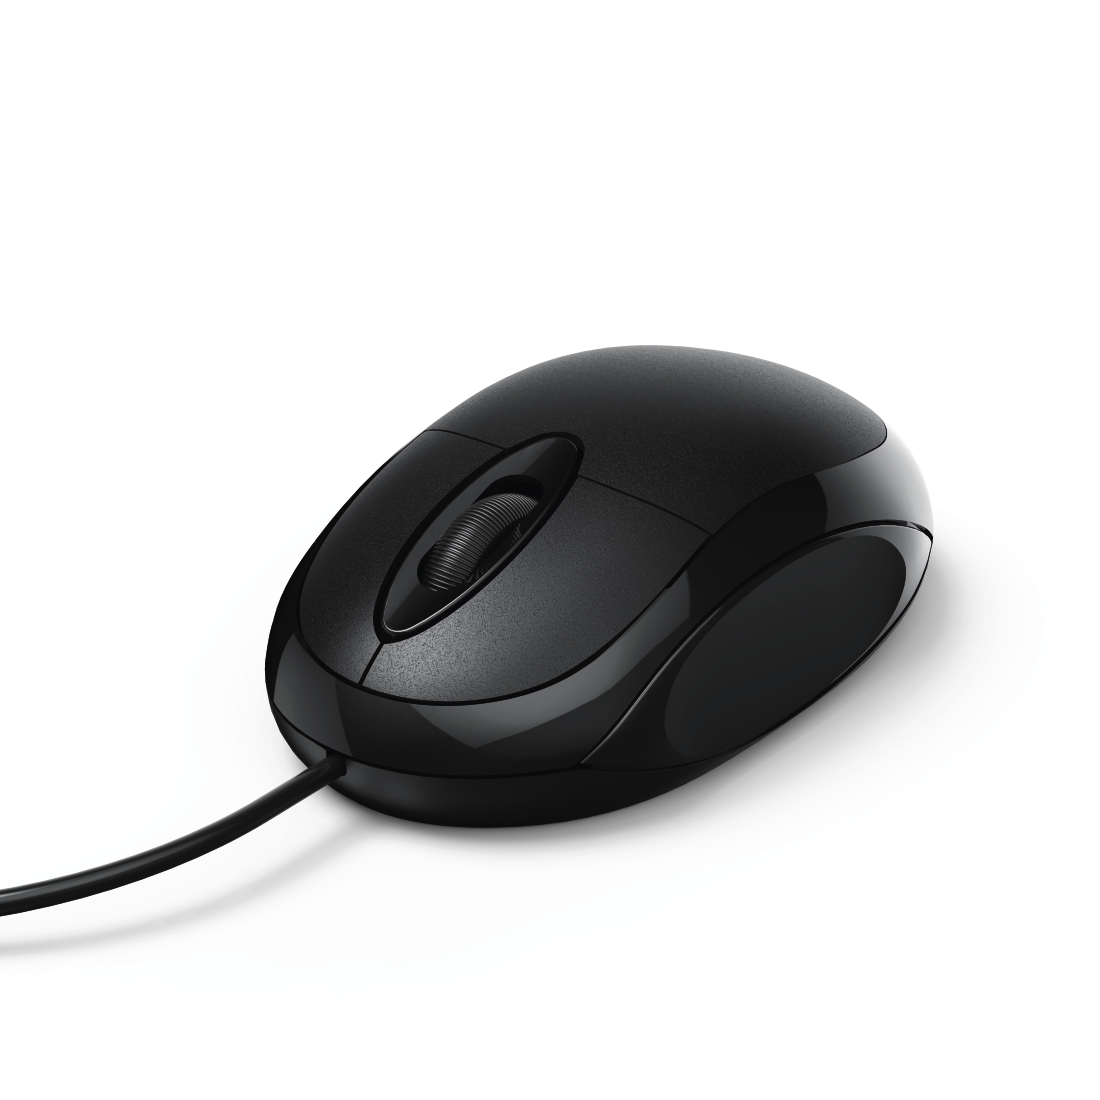 Hama “MC-100” Optical 3-Button Mouse